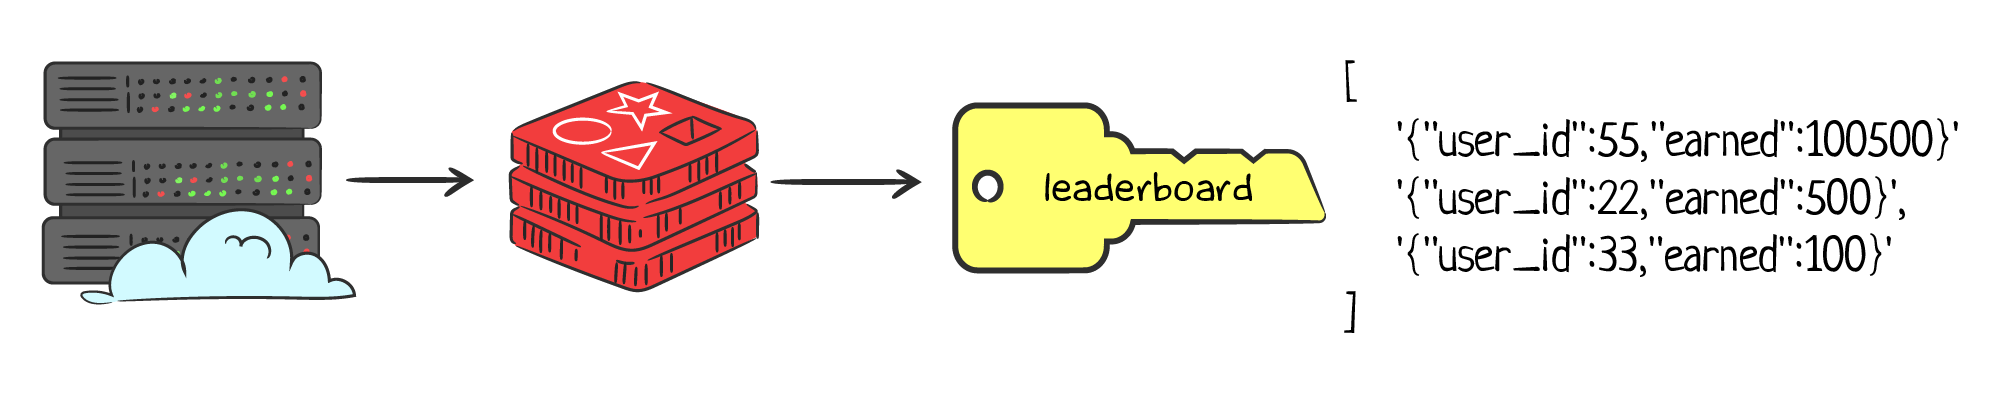 lists_leaderboard